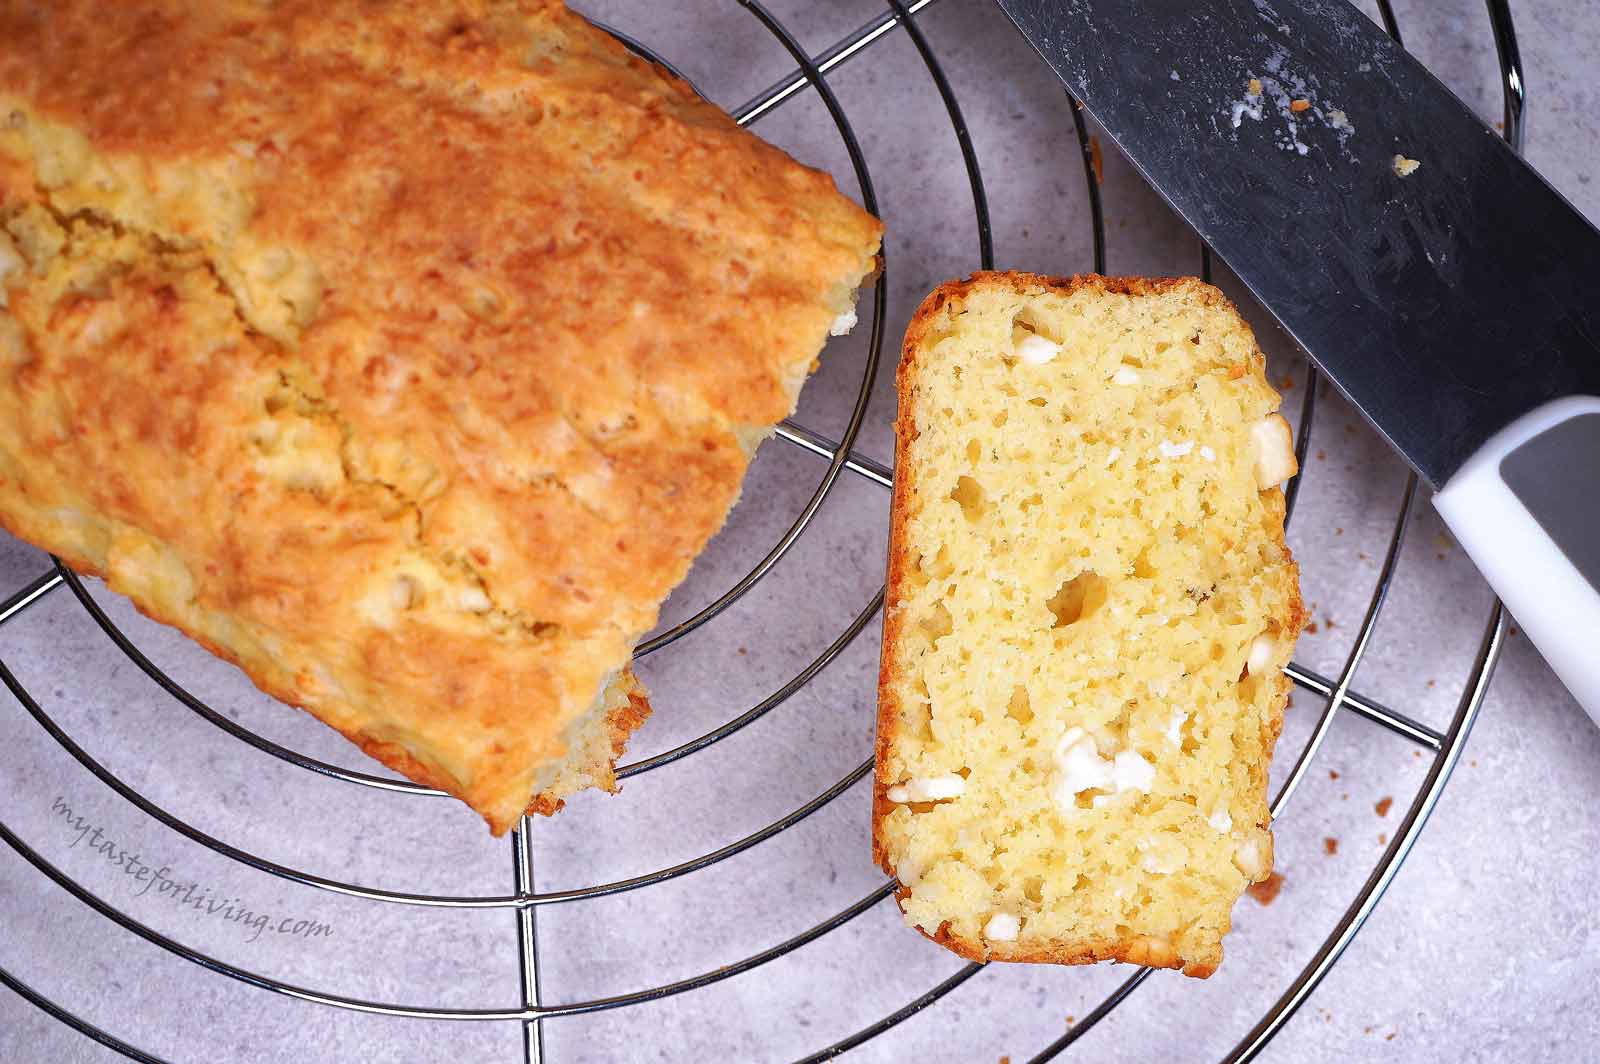 Днес ви предлагам рецепта за бърз солен кекс или хляб, приготвен с брашно от спелта и сирене. Лесно се приготвя в домашни условия и е подходящ е за бърза закуска. 